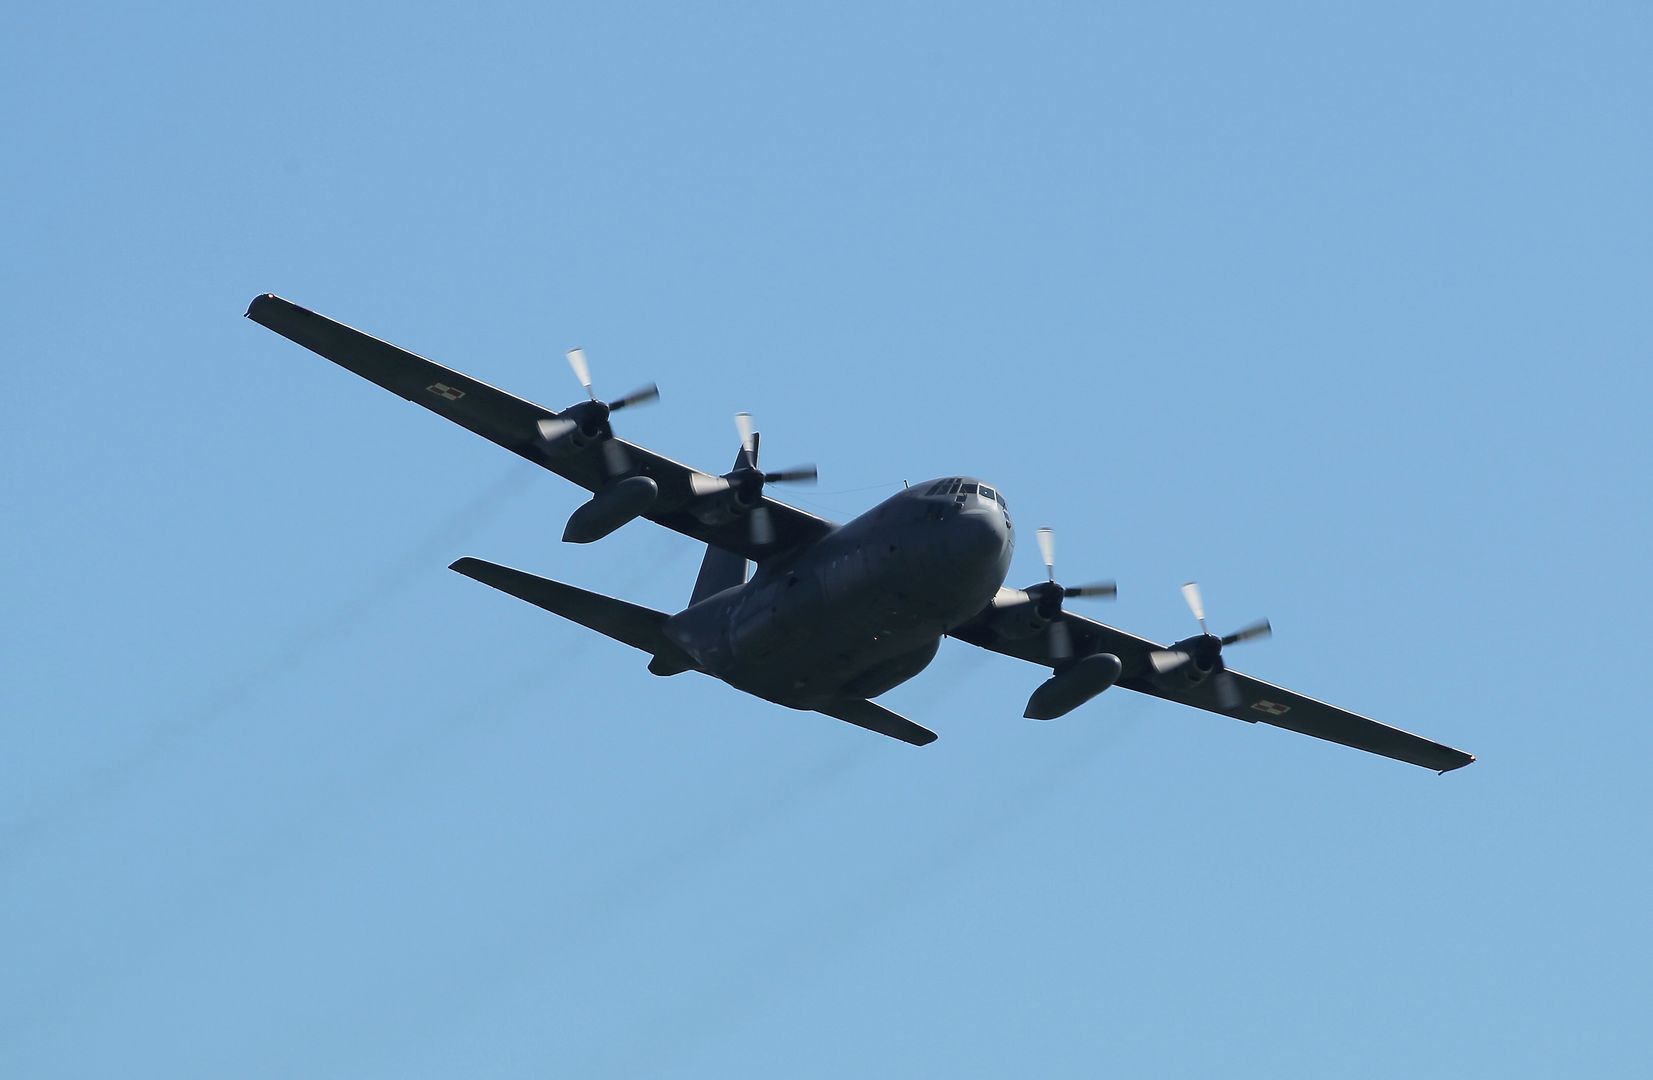 Wojskowy samolot transportowy Hercules lądował awaryjnie na lotnisku we Wrocławiu